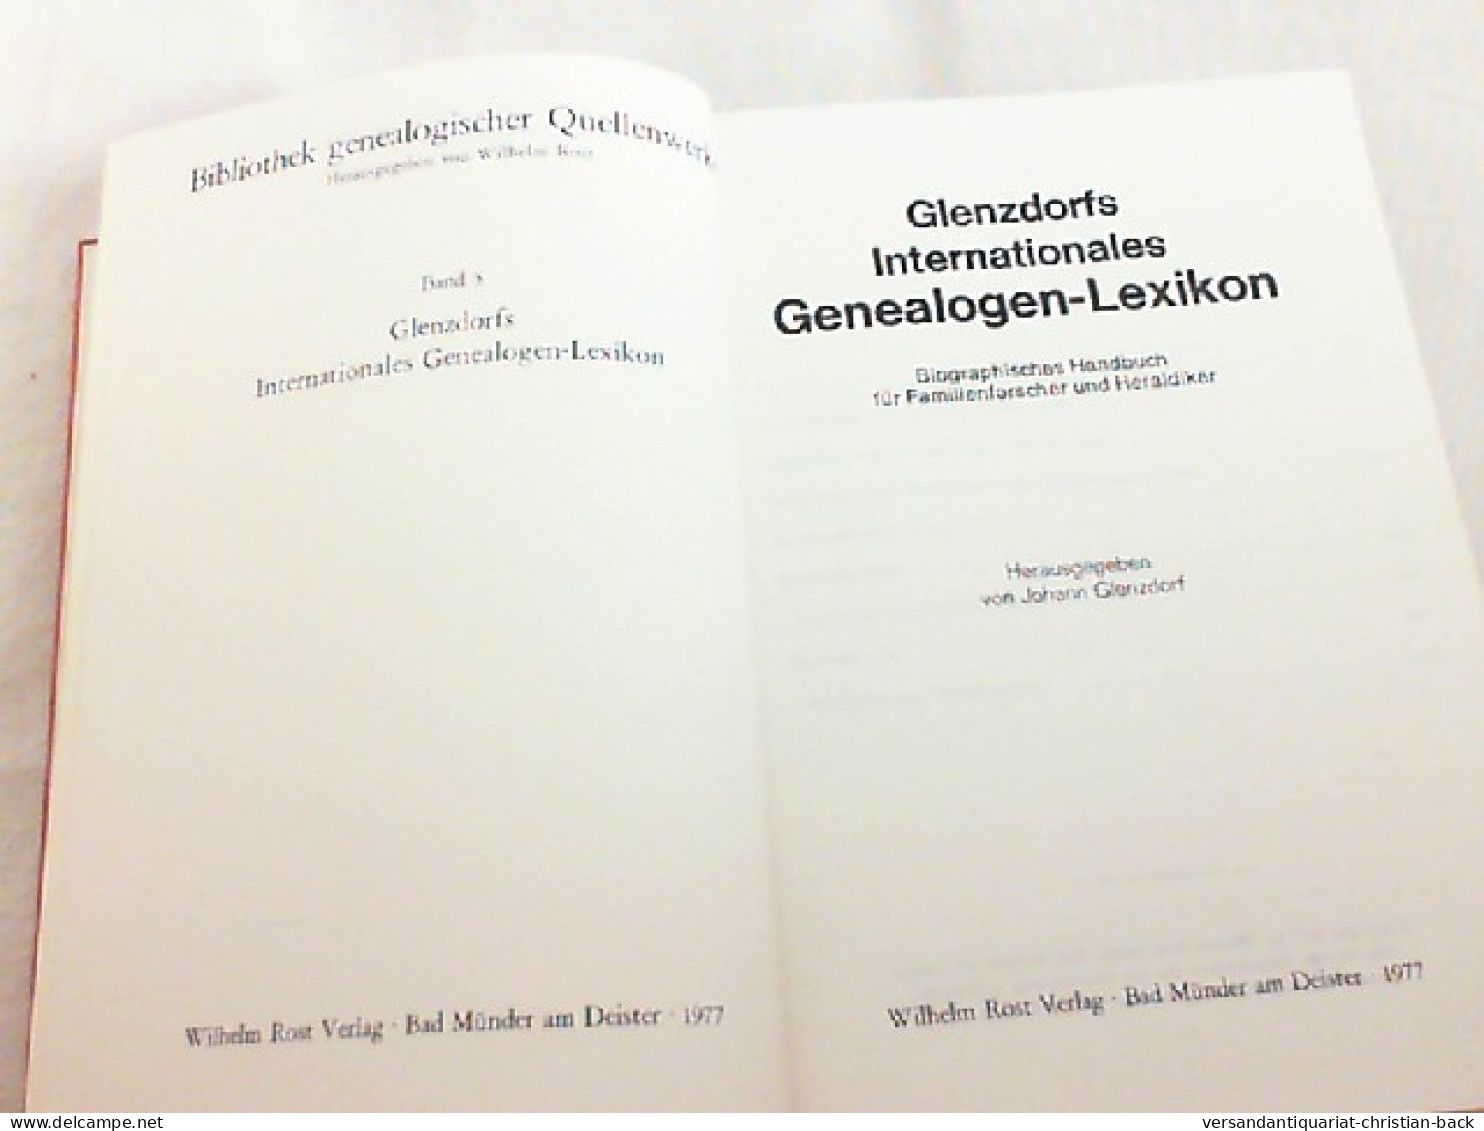 Glenzdorfs Internationales Genealogen Lexikon - Band 5 - Biographisches Handbuch Für Familienforscher Und Fam - Lexicons